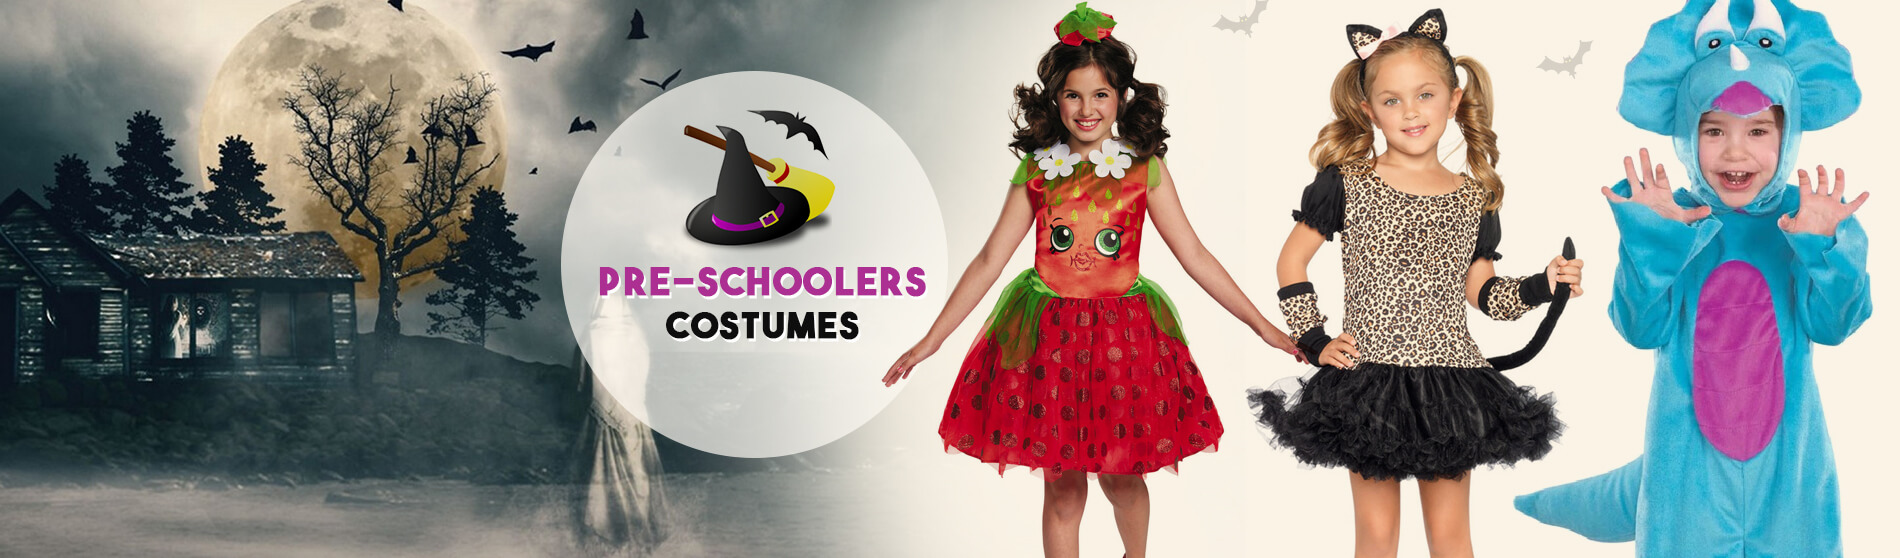 Glendale Halloween : Pre Schoolers Costumes